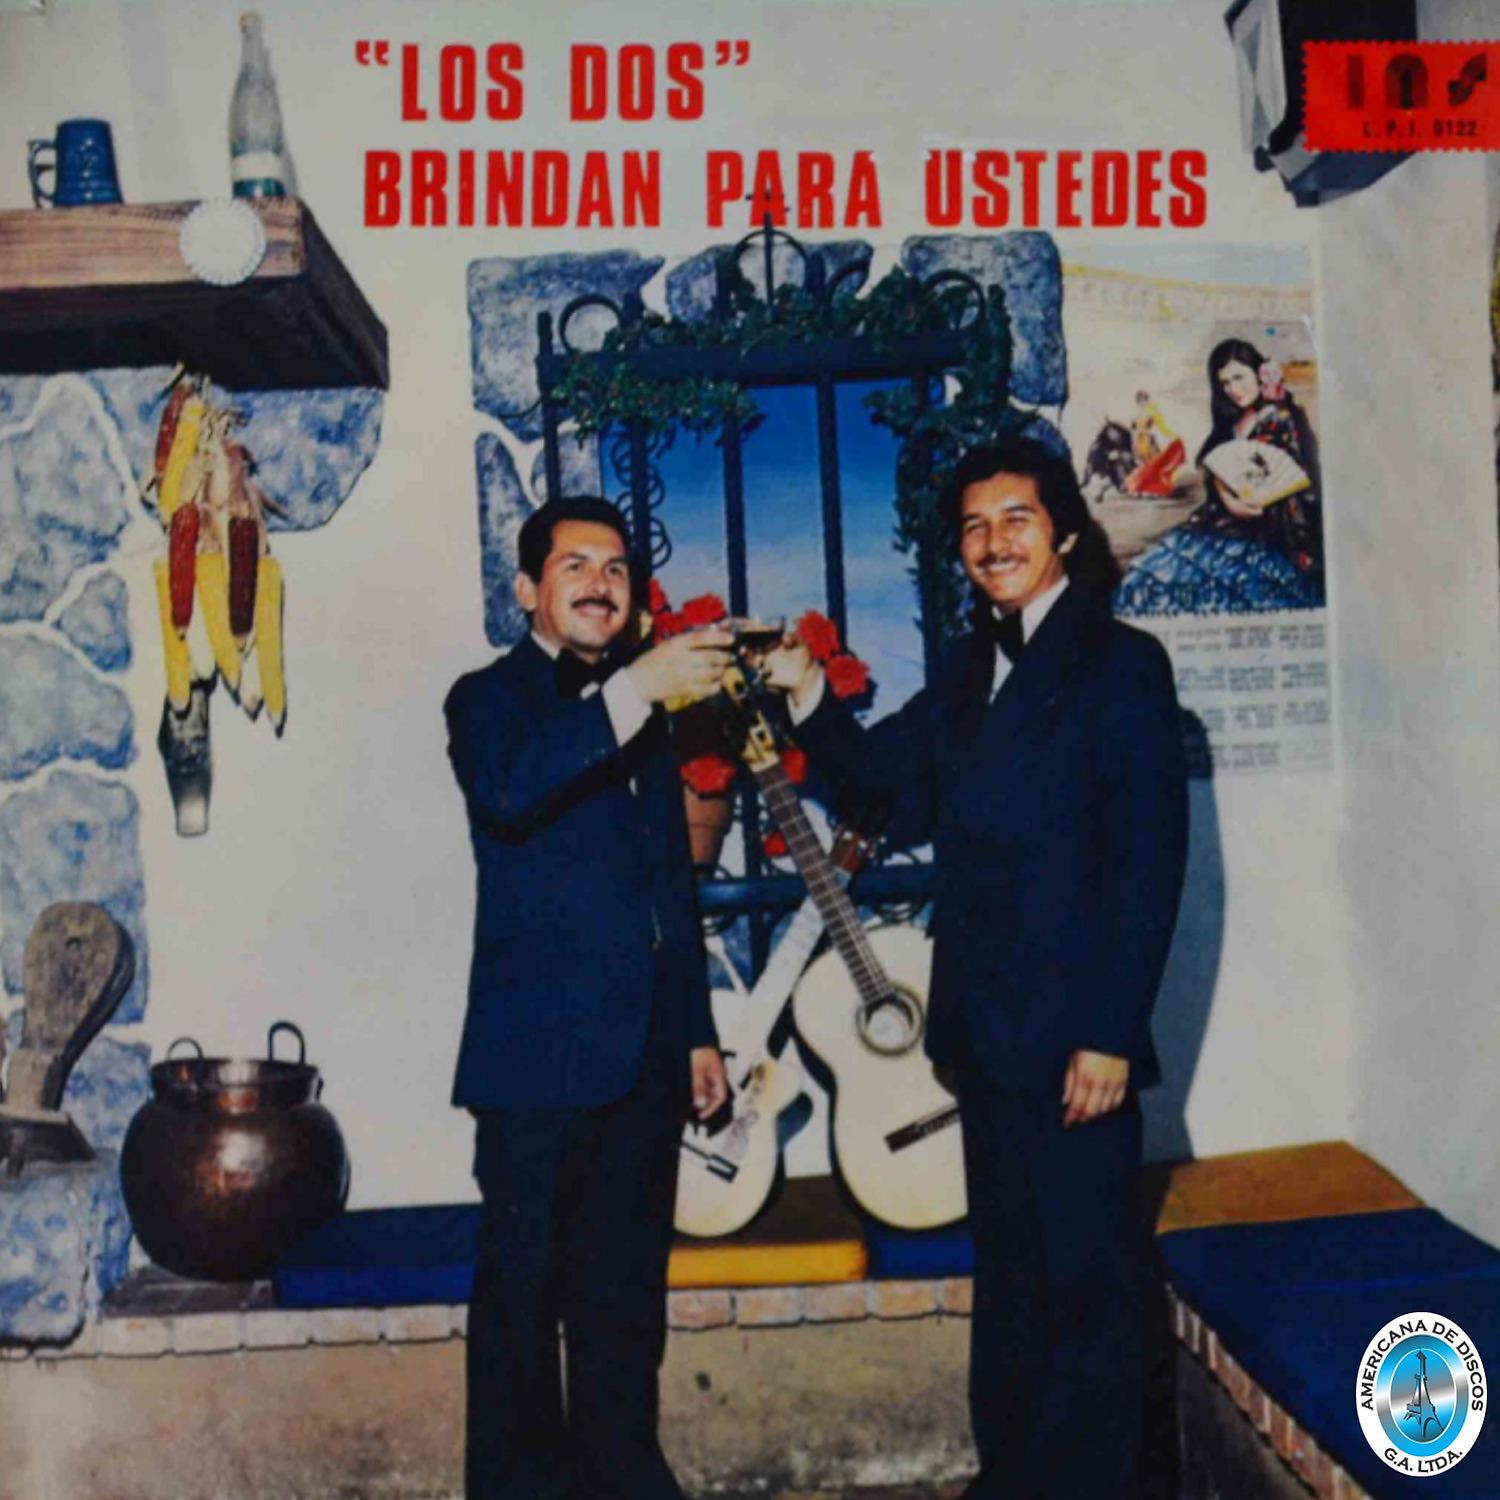 Постер альбома "Los Dos" Brindan para Ustedes